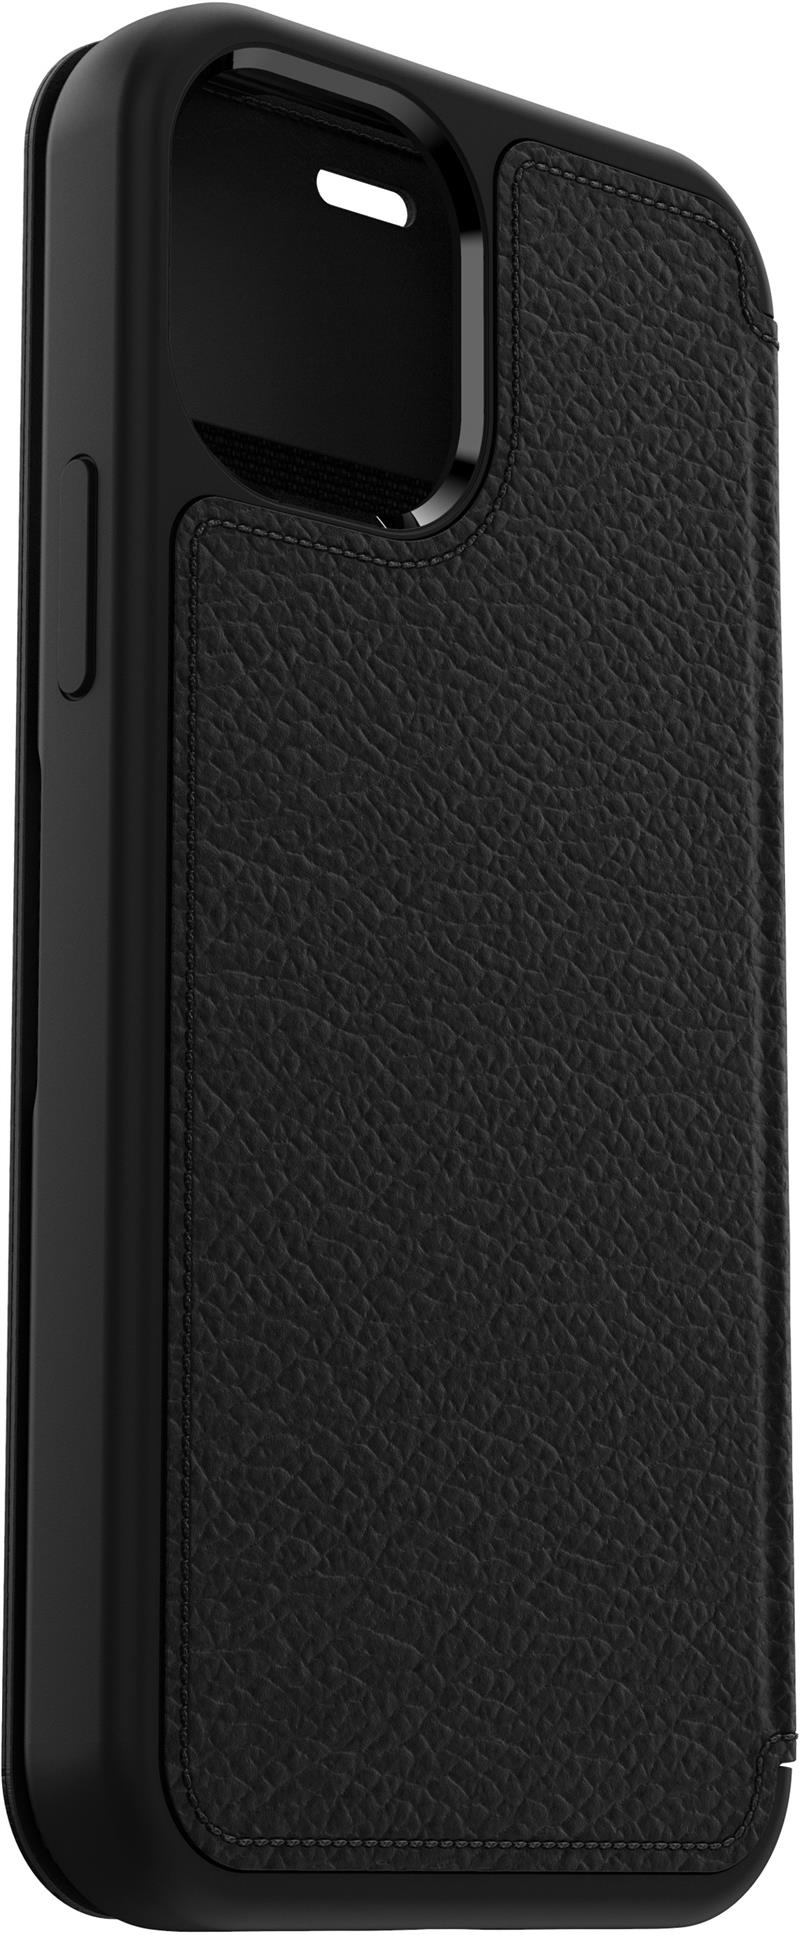 OtterBox Strada Folio Series voor Apple iPhone 12/iPhone 12 Pro, zwart